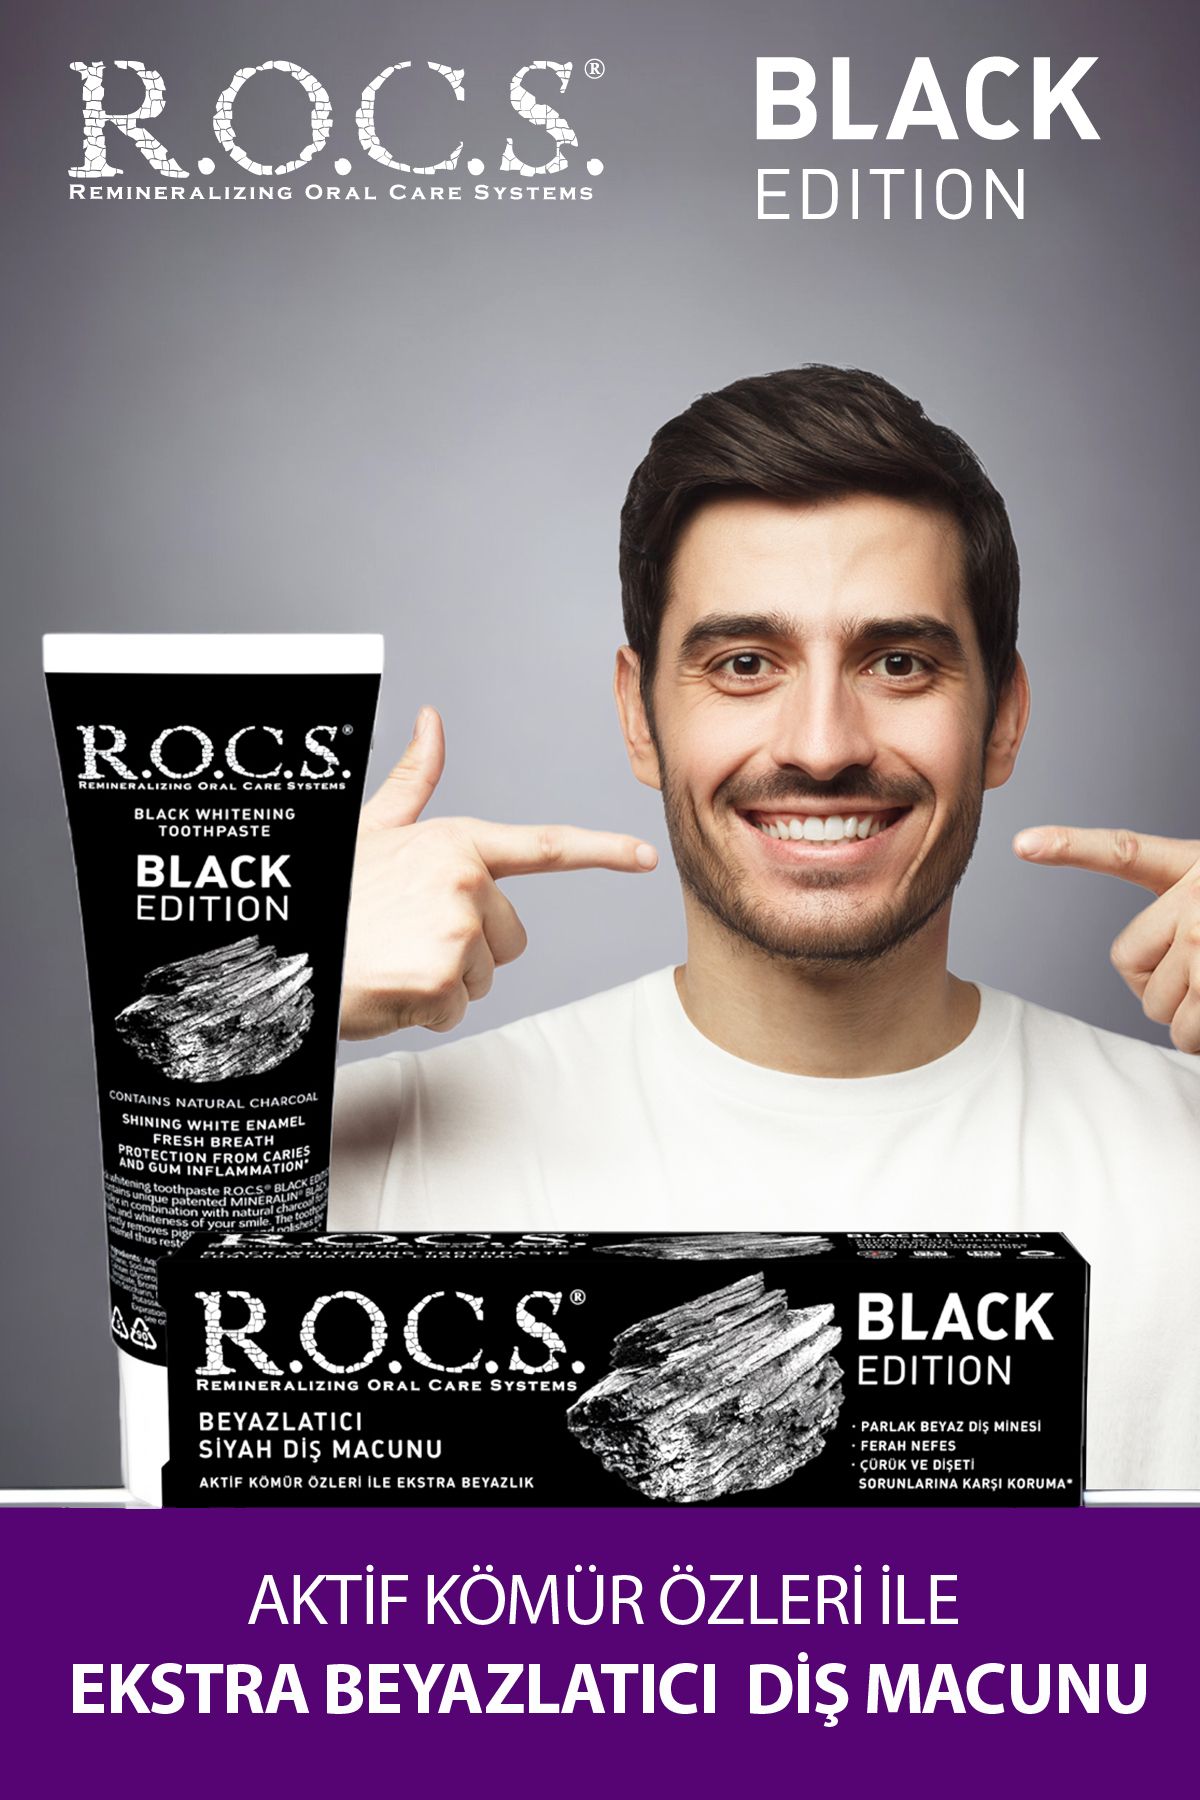 R.O.C.S. Rocs Black Edition Beyazlatıcı Diş Macunu 60 Ml